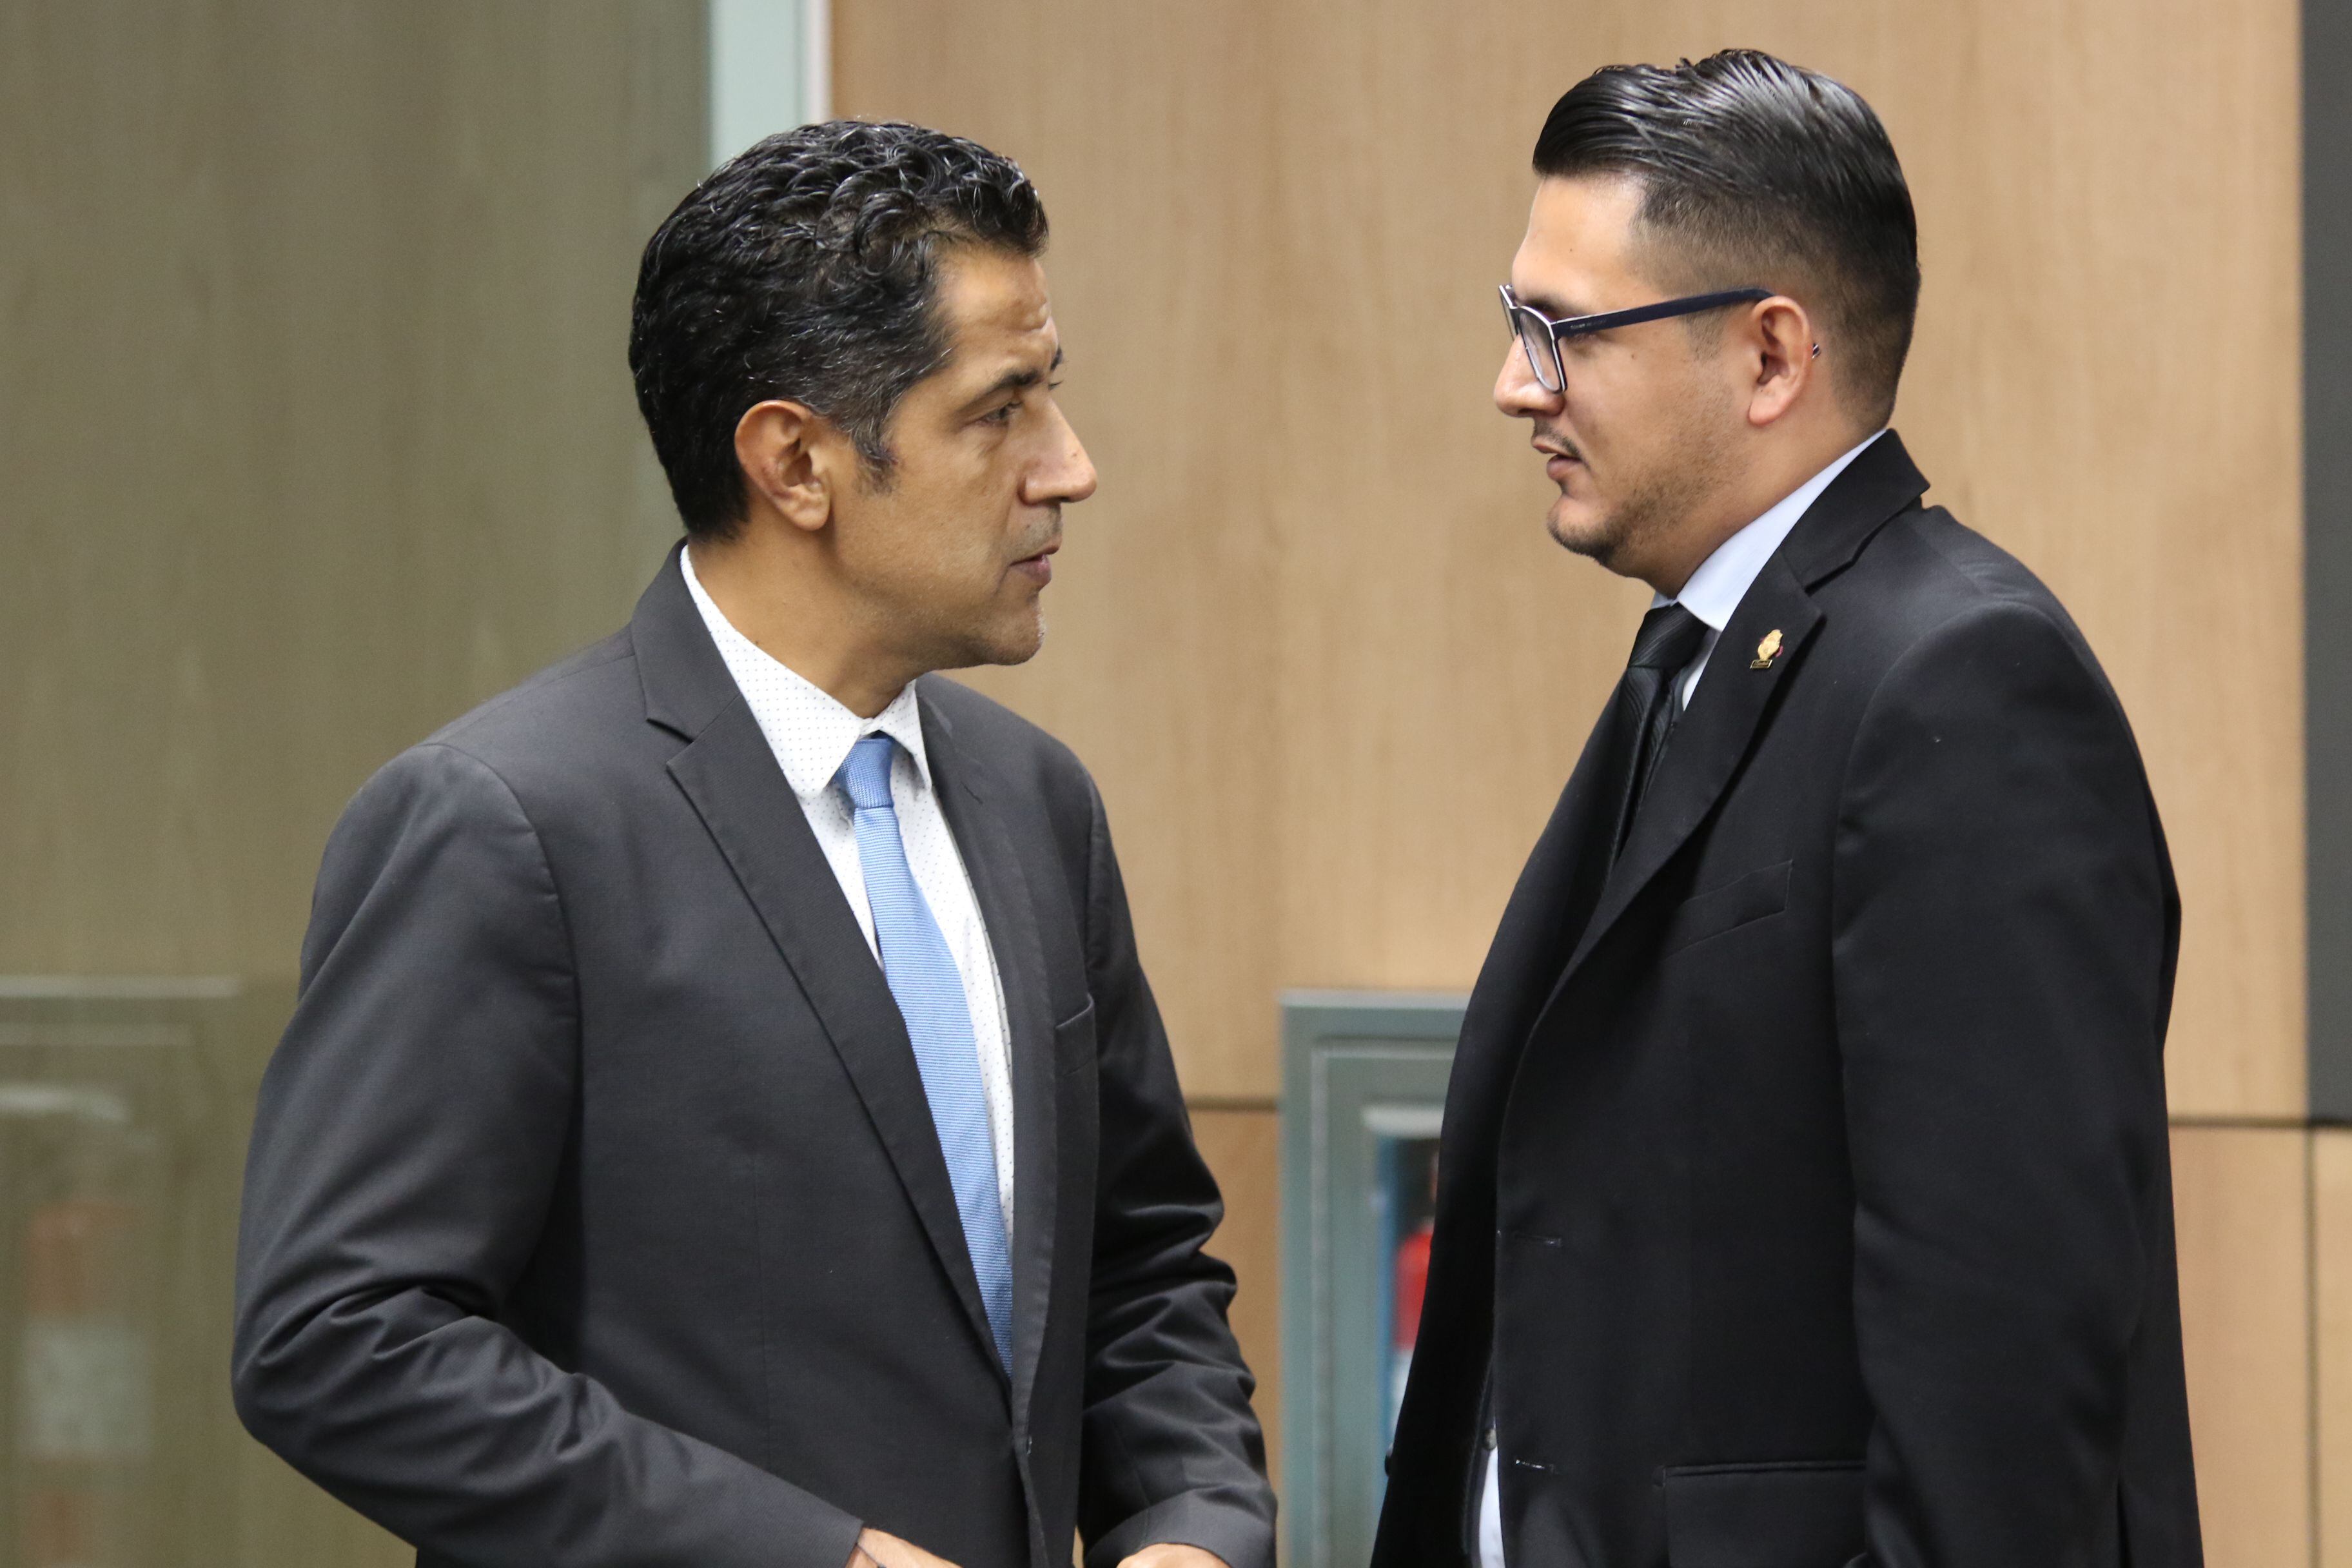 En la imagen, el diputado David Segura (der.) habla con el ministro de Hacienda, Nogui Acosta (izq.), en la Asamblea Legislativa.